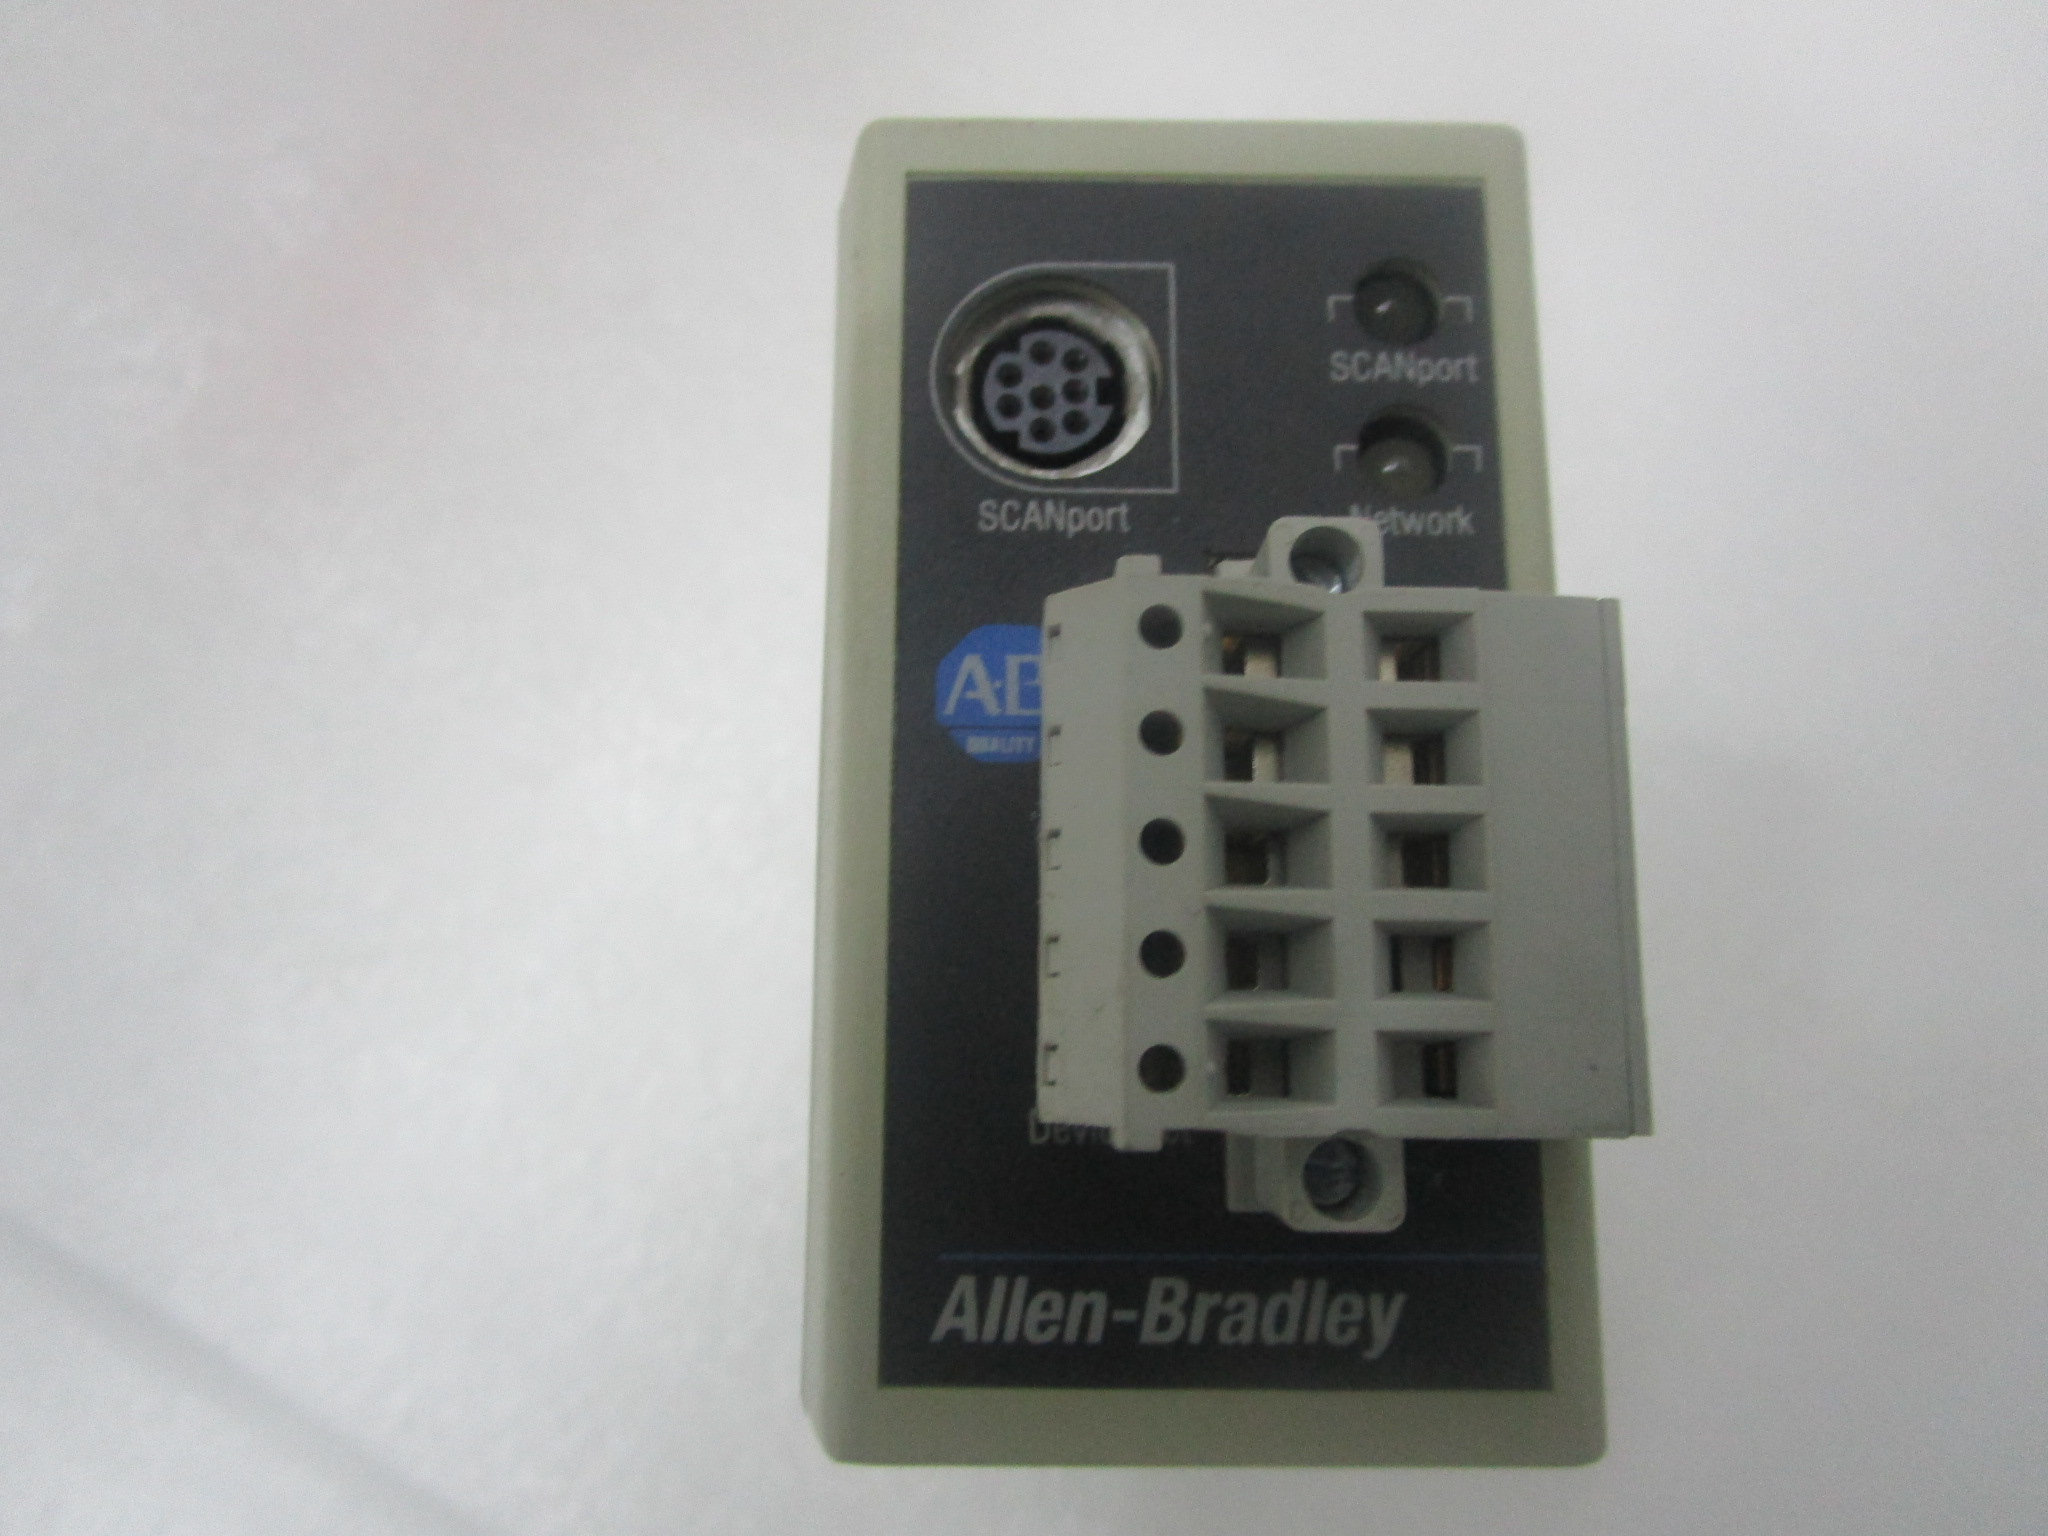 A-B 1771-OD16 Digital I/O AC Input and output Modules